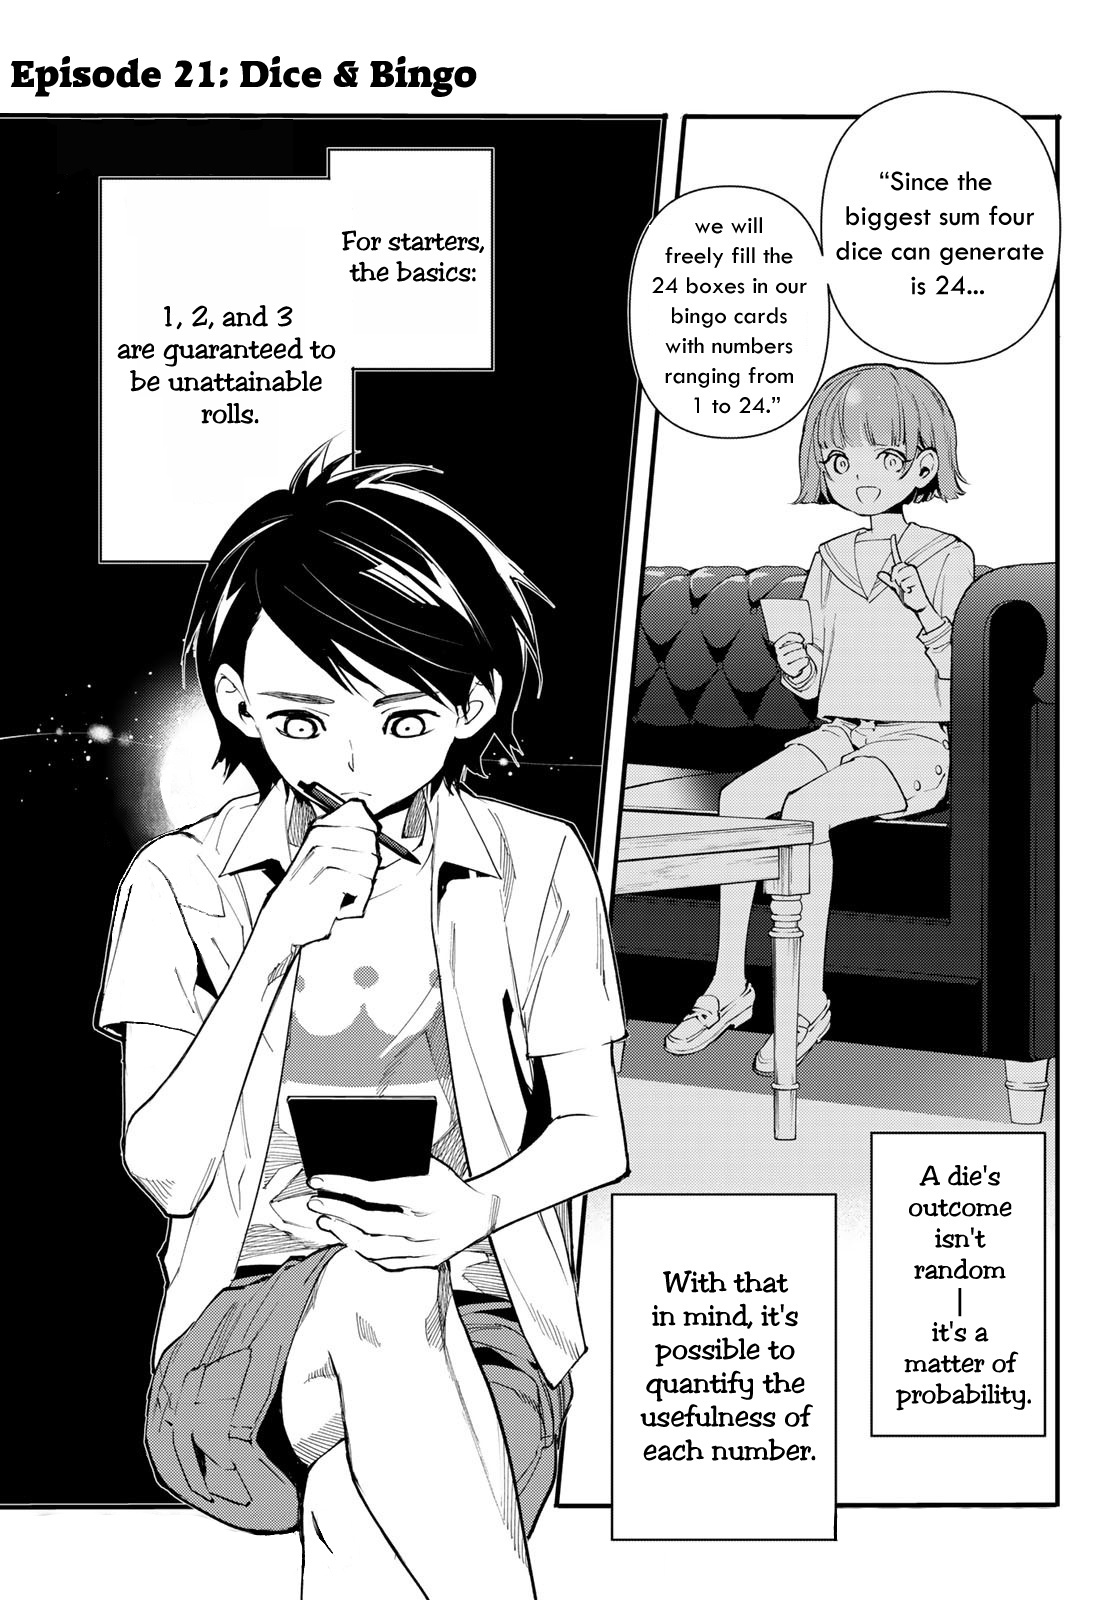 Shin Honkaku Mahou Shoujo Risuka Vol.5 Chapter 21: A Key Prescence!!! — Dice & Bingo - Picture 1